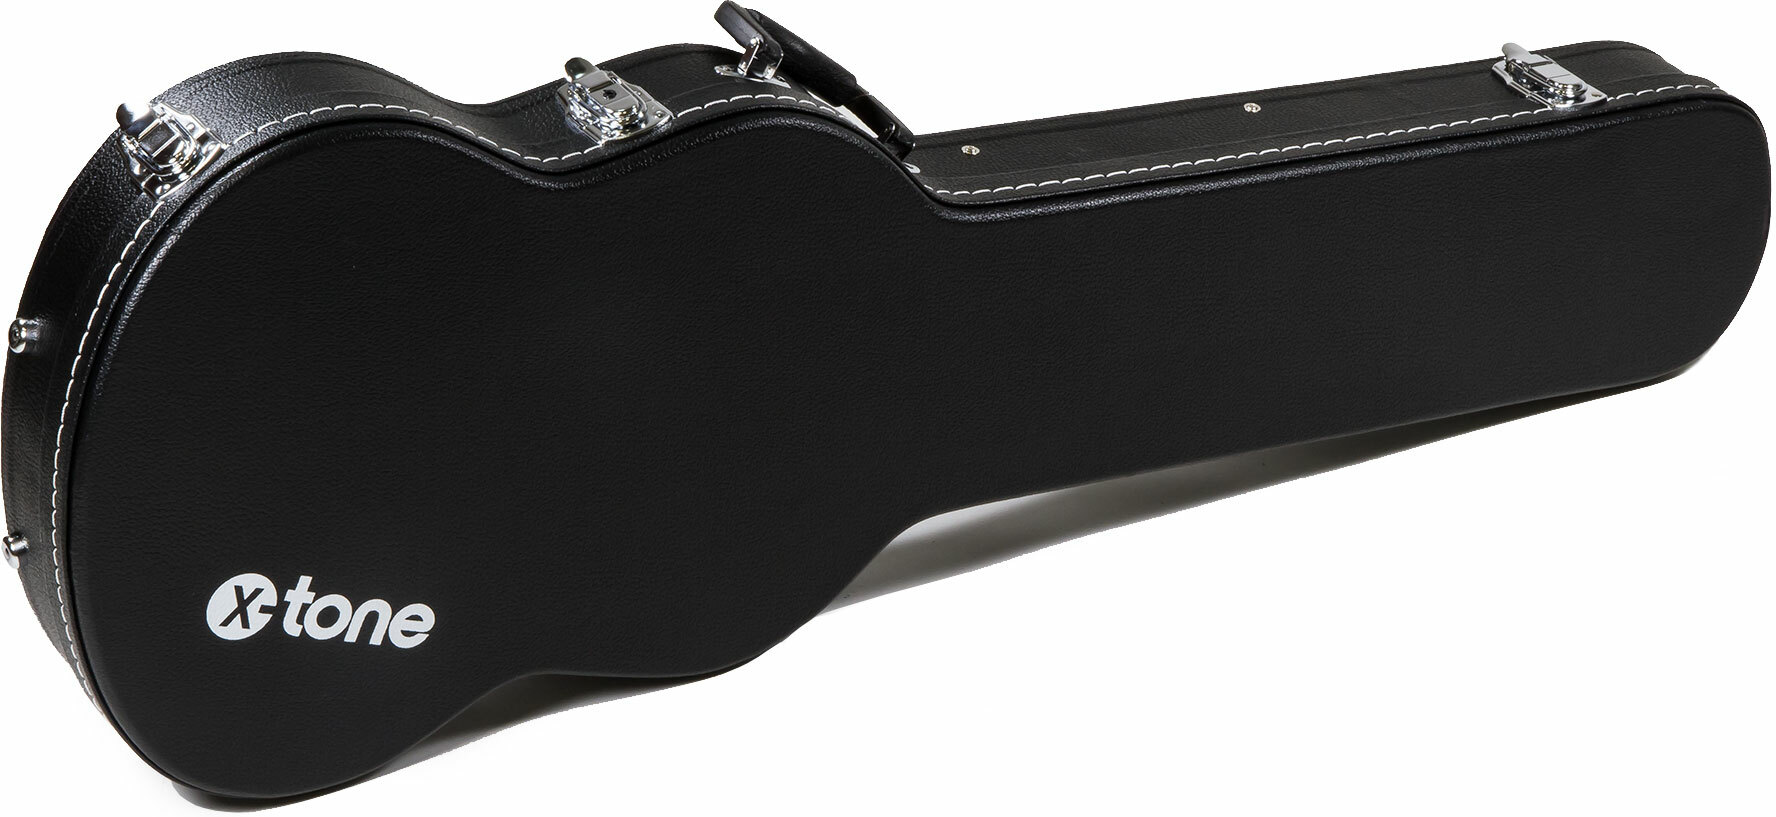 X-tone 1503 Standard Electrique Sg En Forme Black - Elektrische gitaarkoffer - Main picture